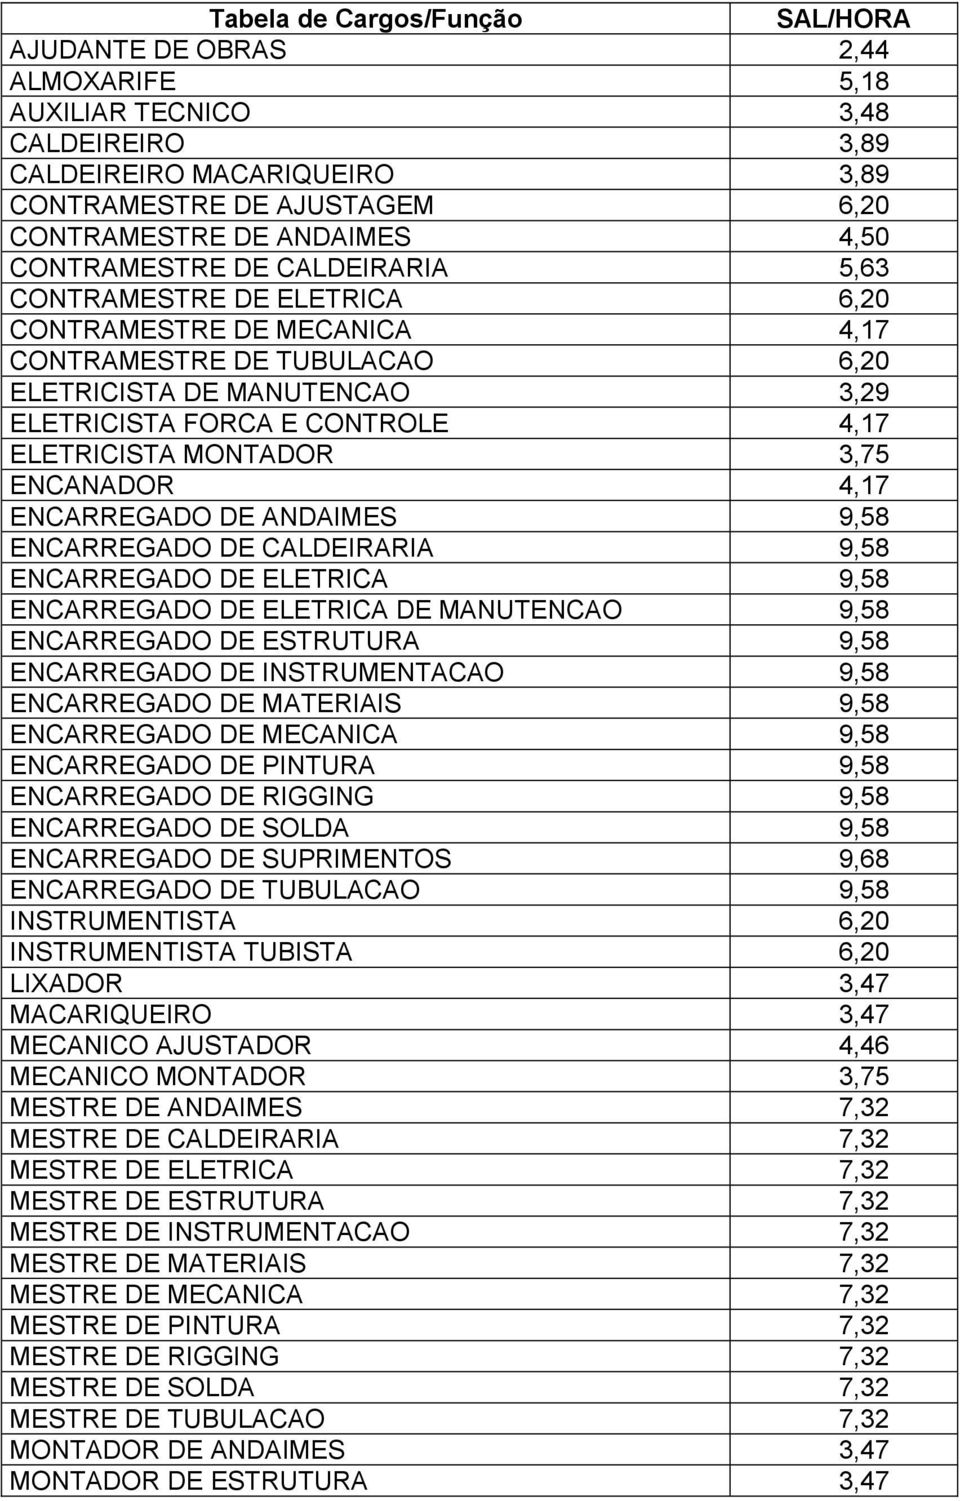 ELETRICISTA MONTADOR 3,75 ENCANADOR 4,17 ENCARREGADO DE ANDAIMES 9,58 ENCARREGADO DE CALDEIRARIA 9,58 ENCARREGADO DE ELETRICA 9,58 ENCARREGADO DE ELETRICA DE MANUTENCAO 9,58 ENCARREGADO DE ESTRUTURA